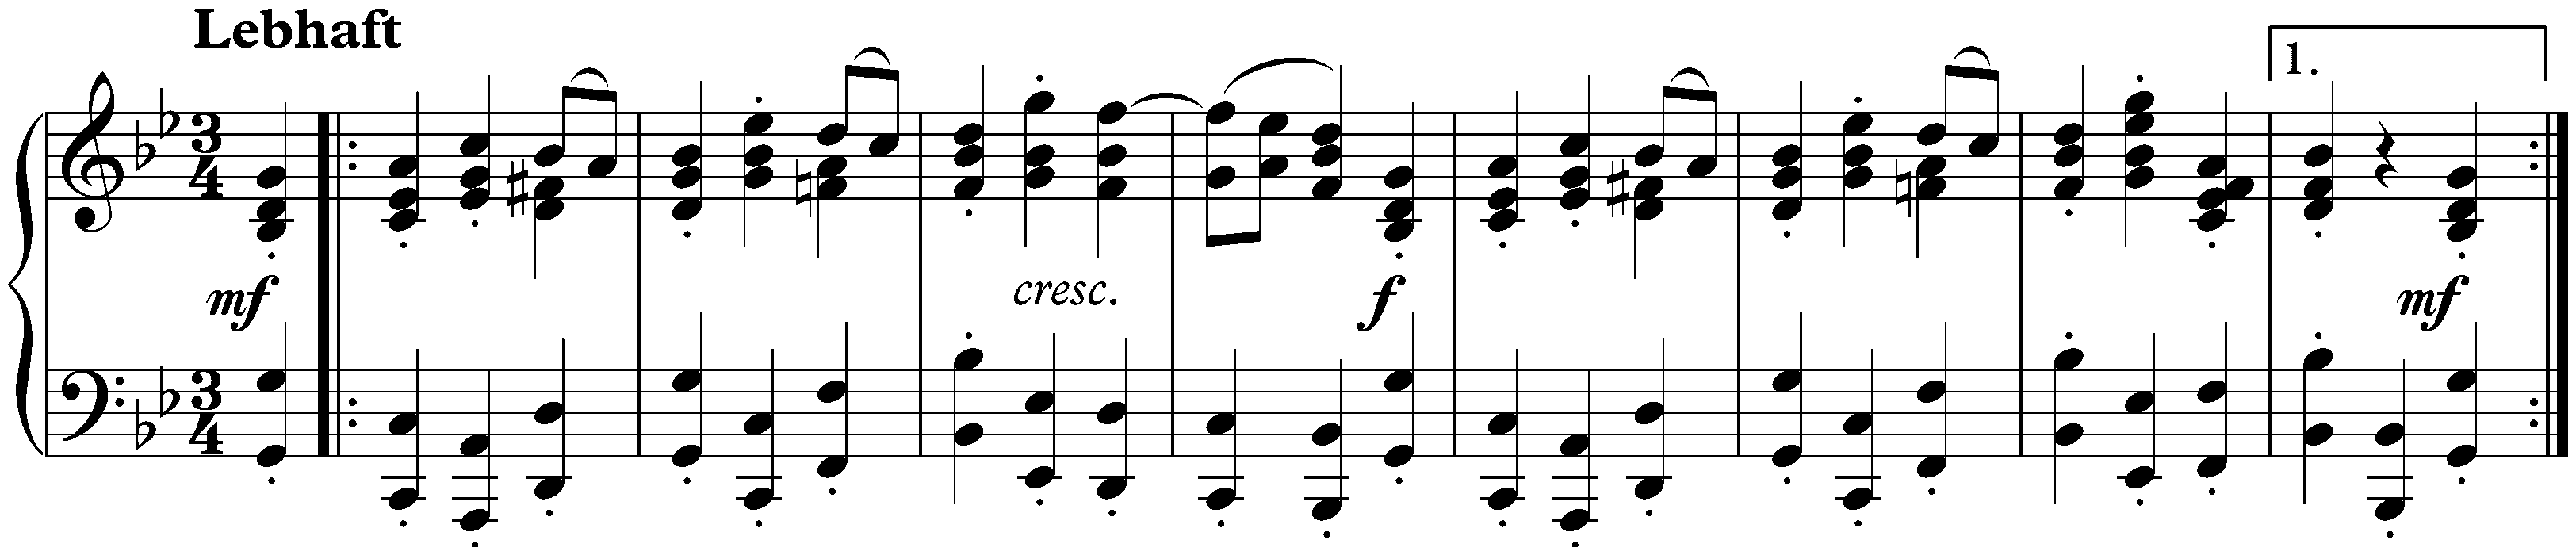 Bunte Blätter, op. 99; 13. Scherzo